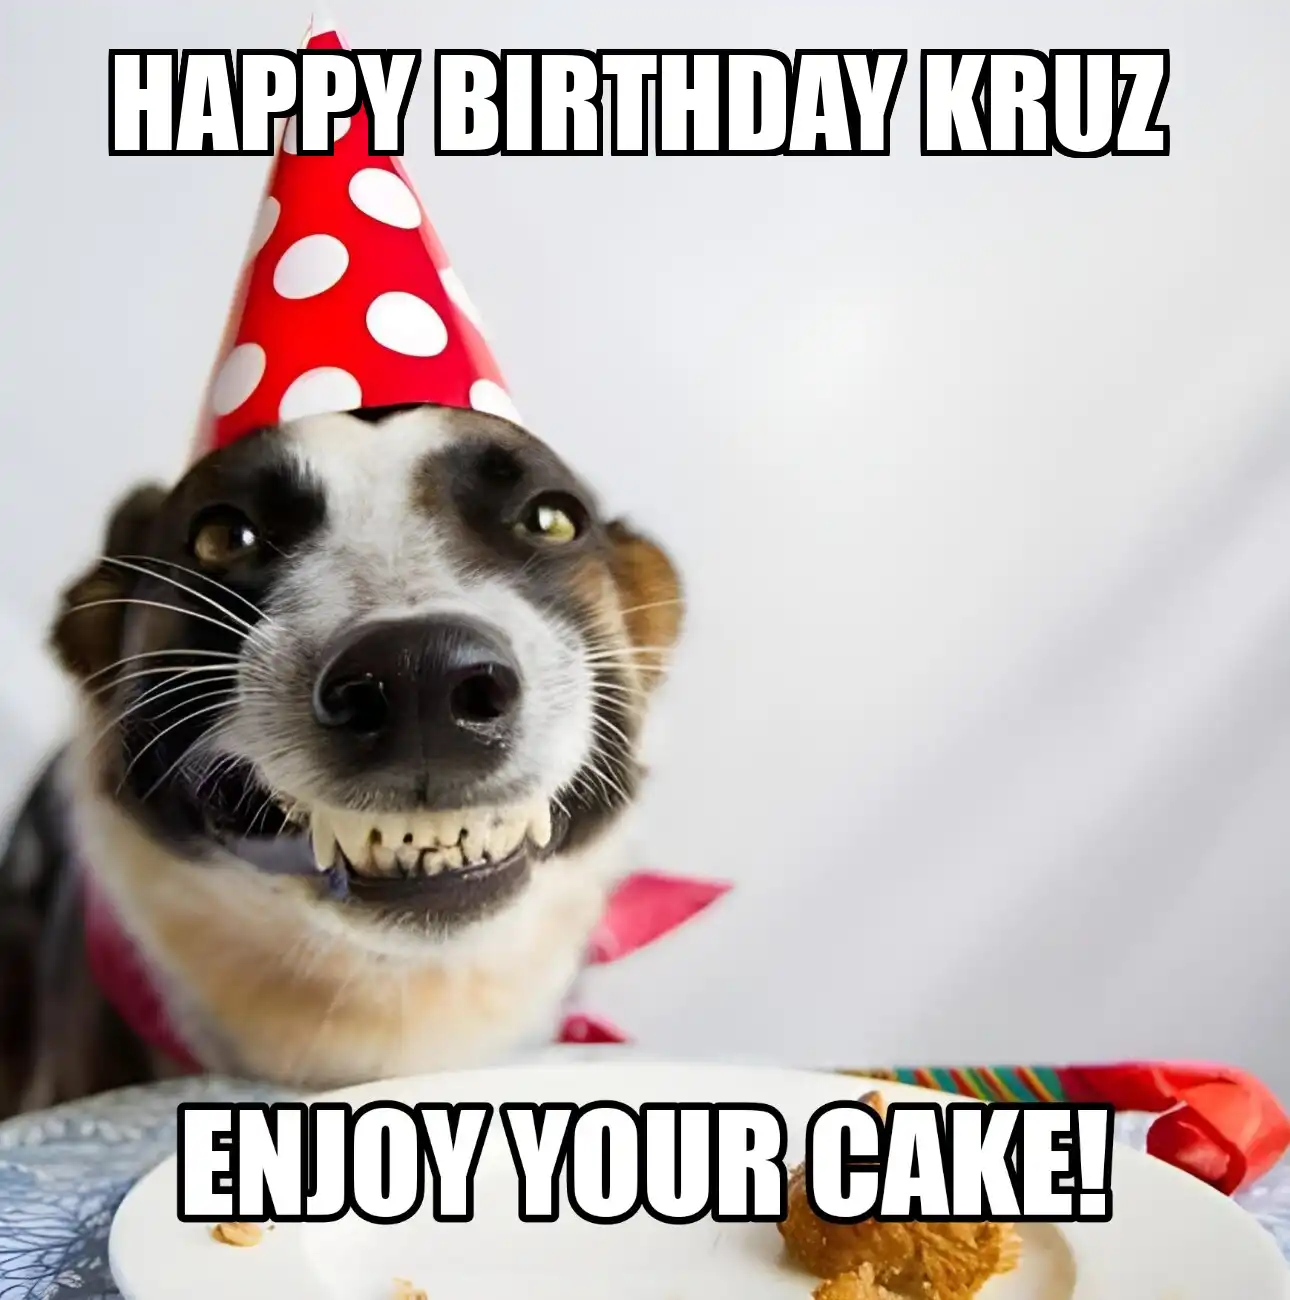 Happy Birthday Kruz Enjoy Your Cake Dog Meme